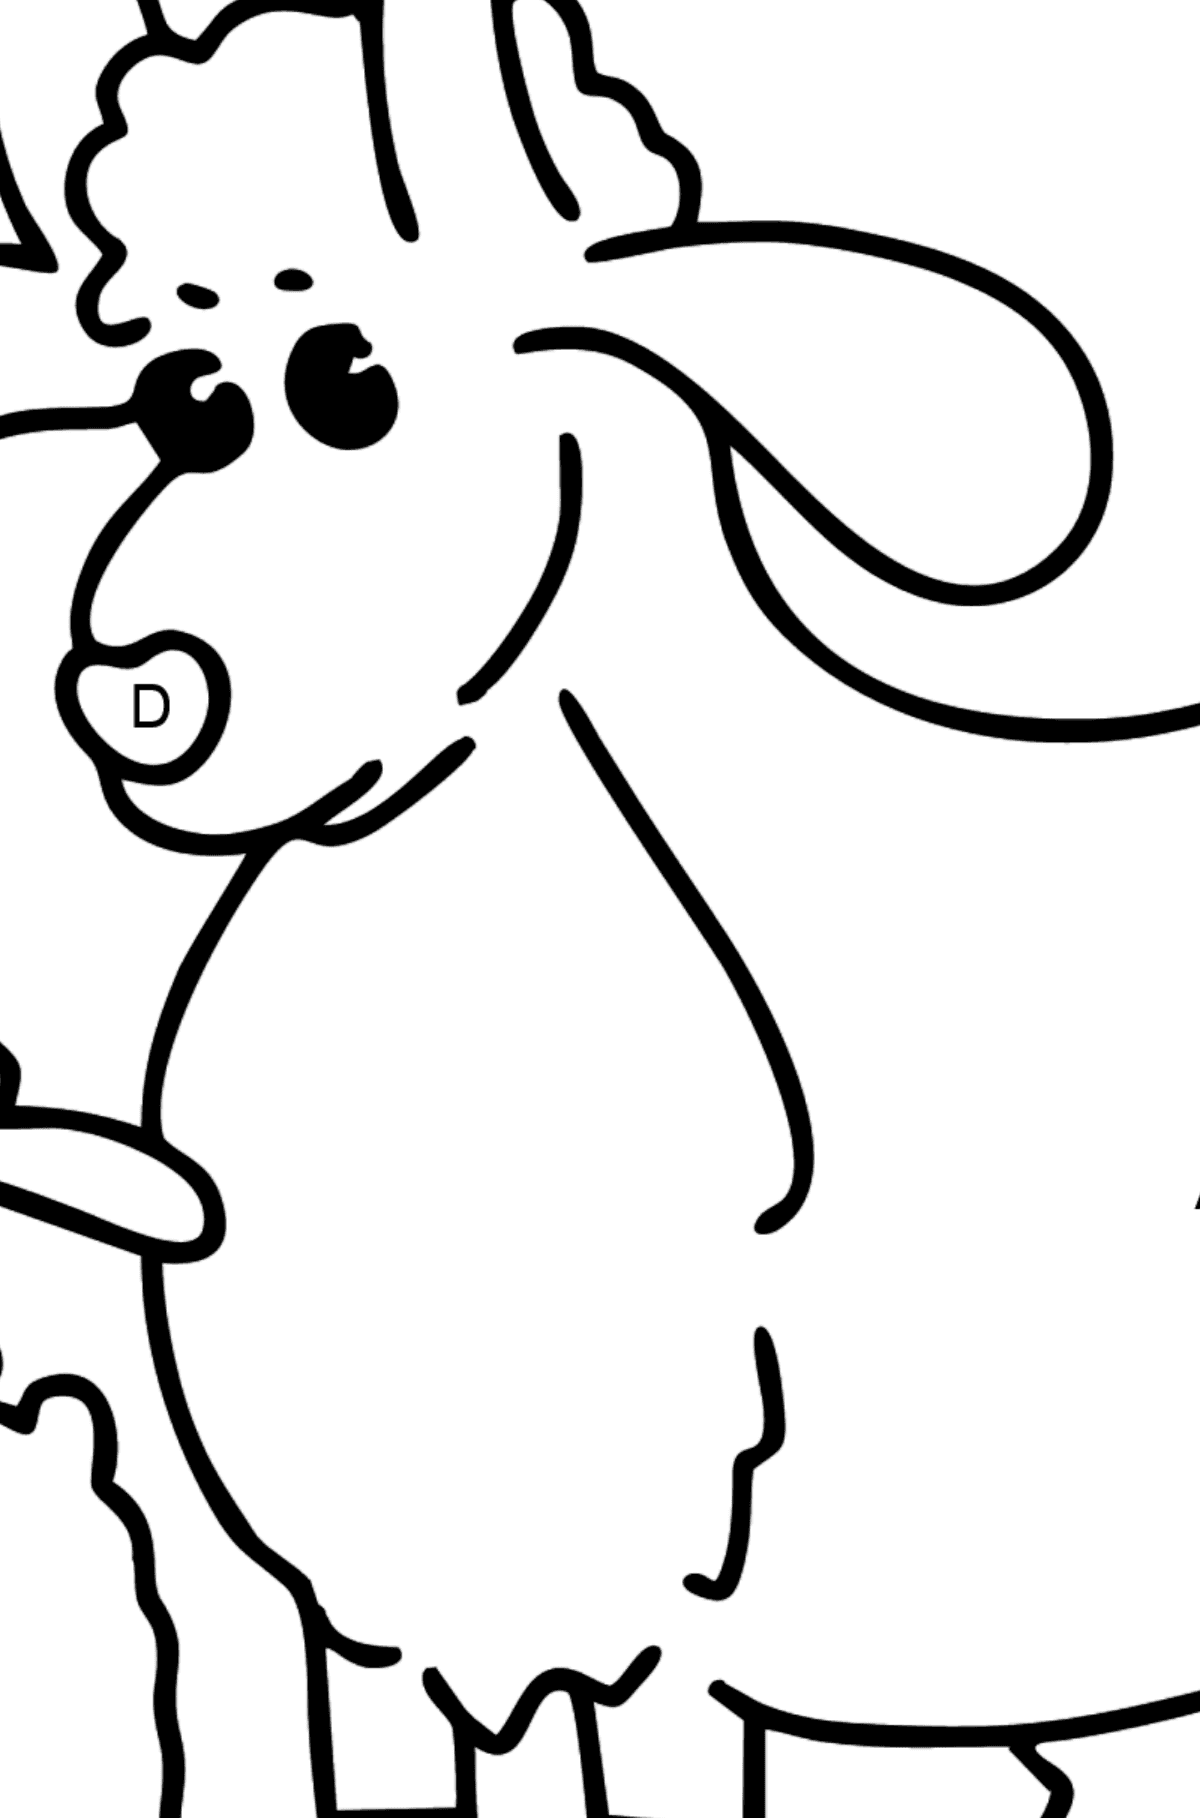 Coloriage - Chèvre et chevreau - Coloriage par Lettres pour les Enfants